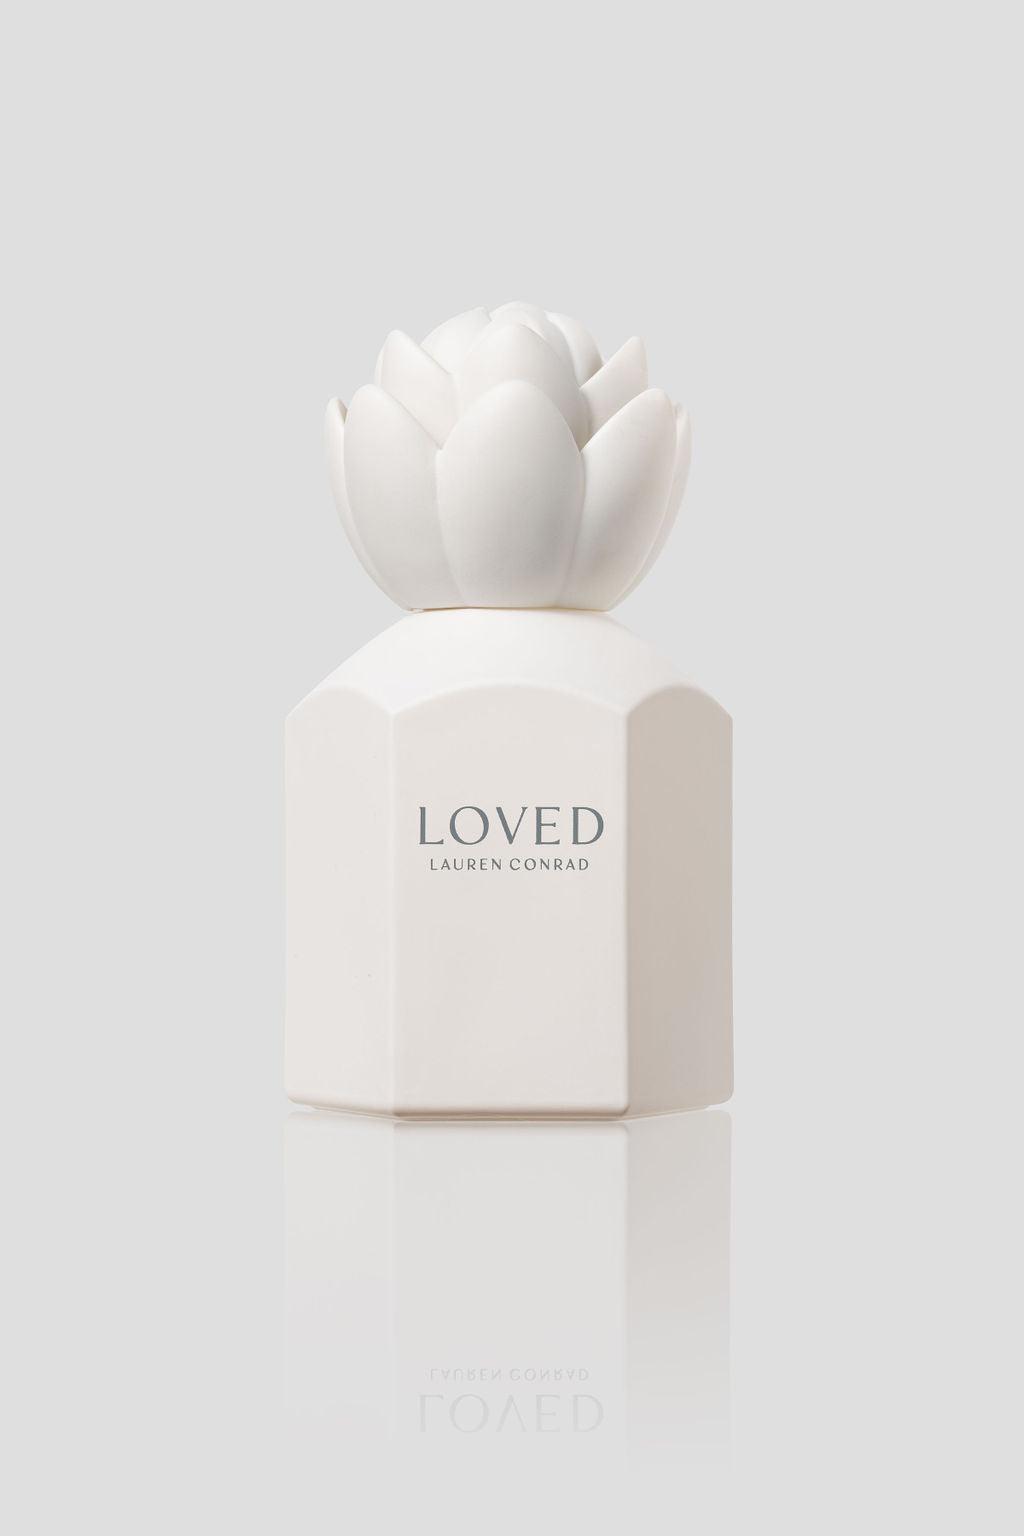 One Love for Women 1.7 oz Eau de Parfum Spray Scent